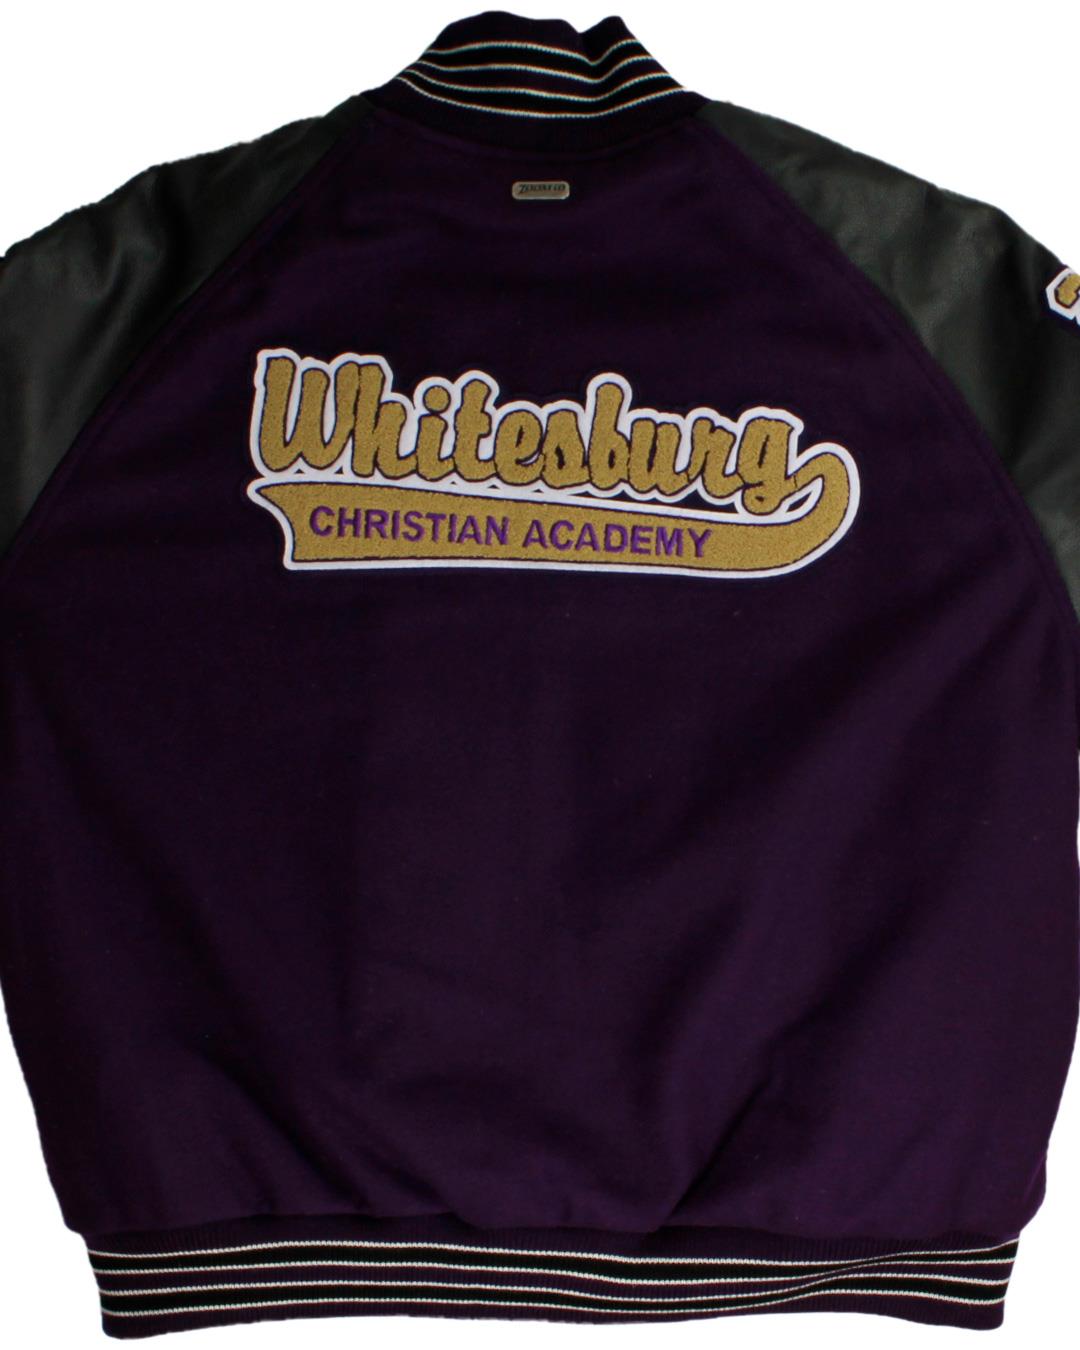 Whitesburg Christian Academy Varsity Jacket, Huntsville, Alabama - Back